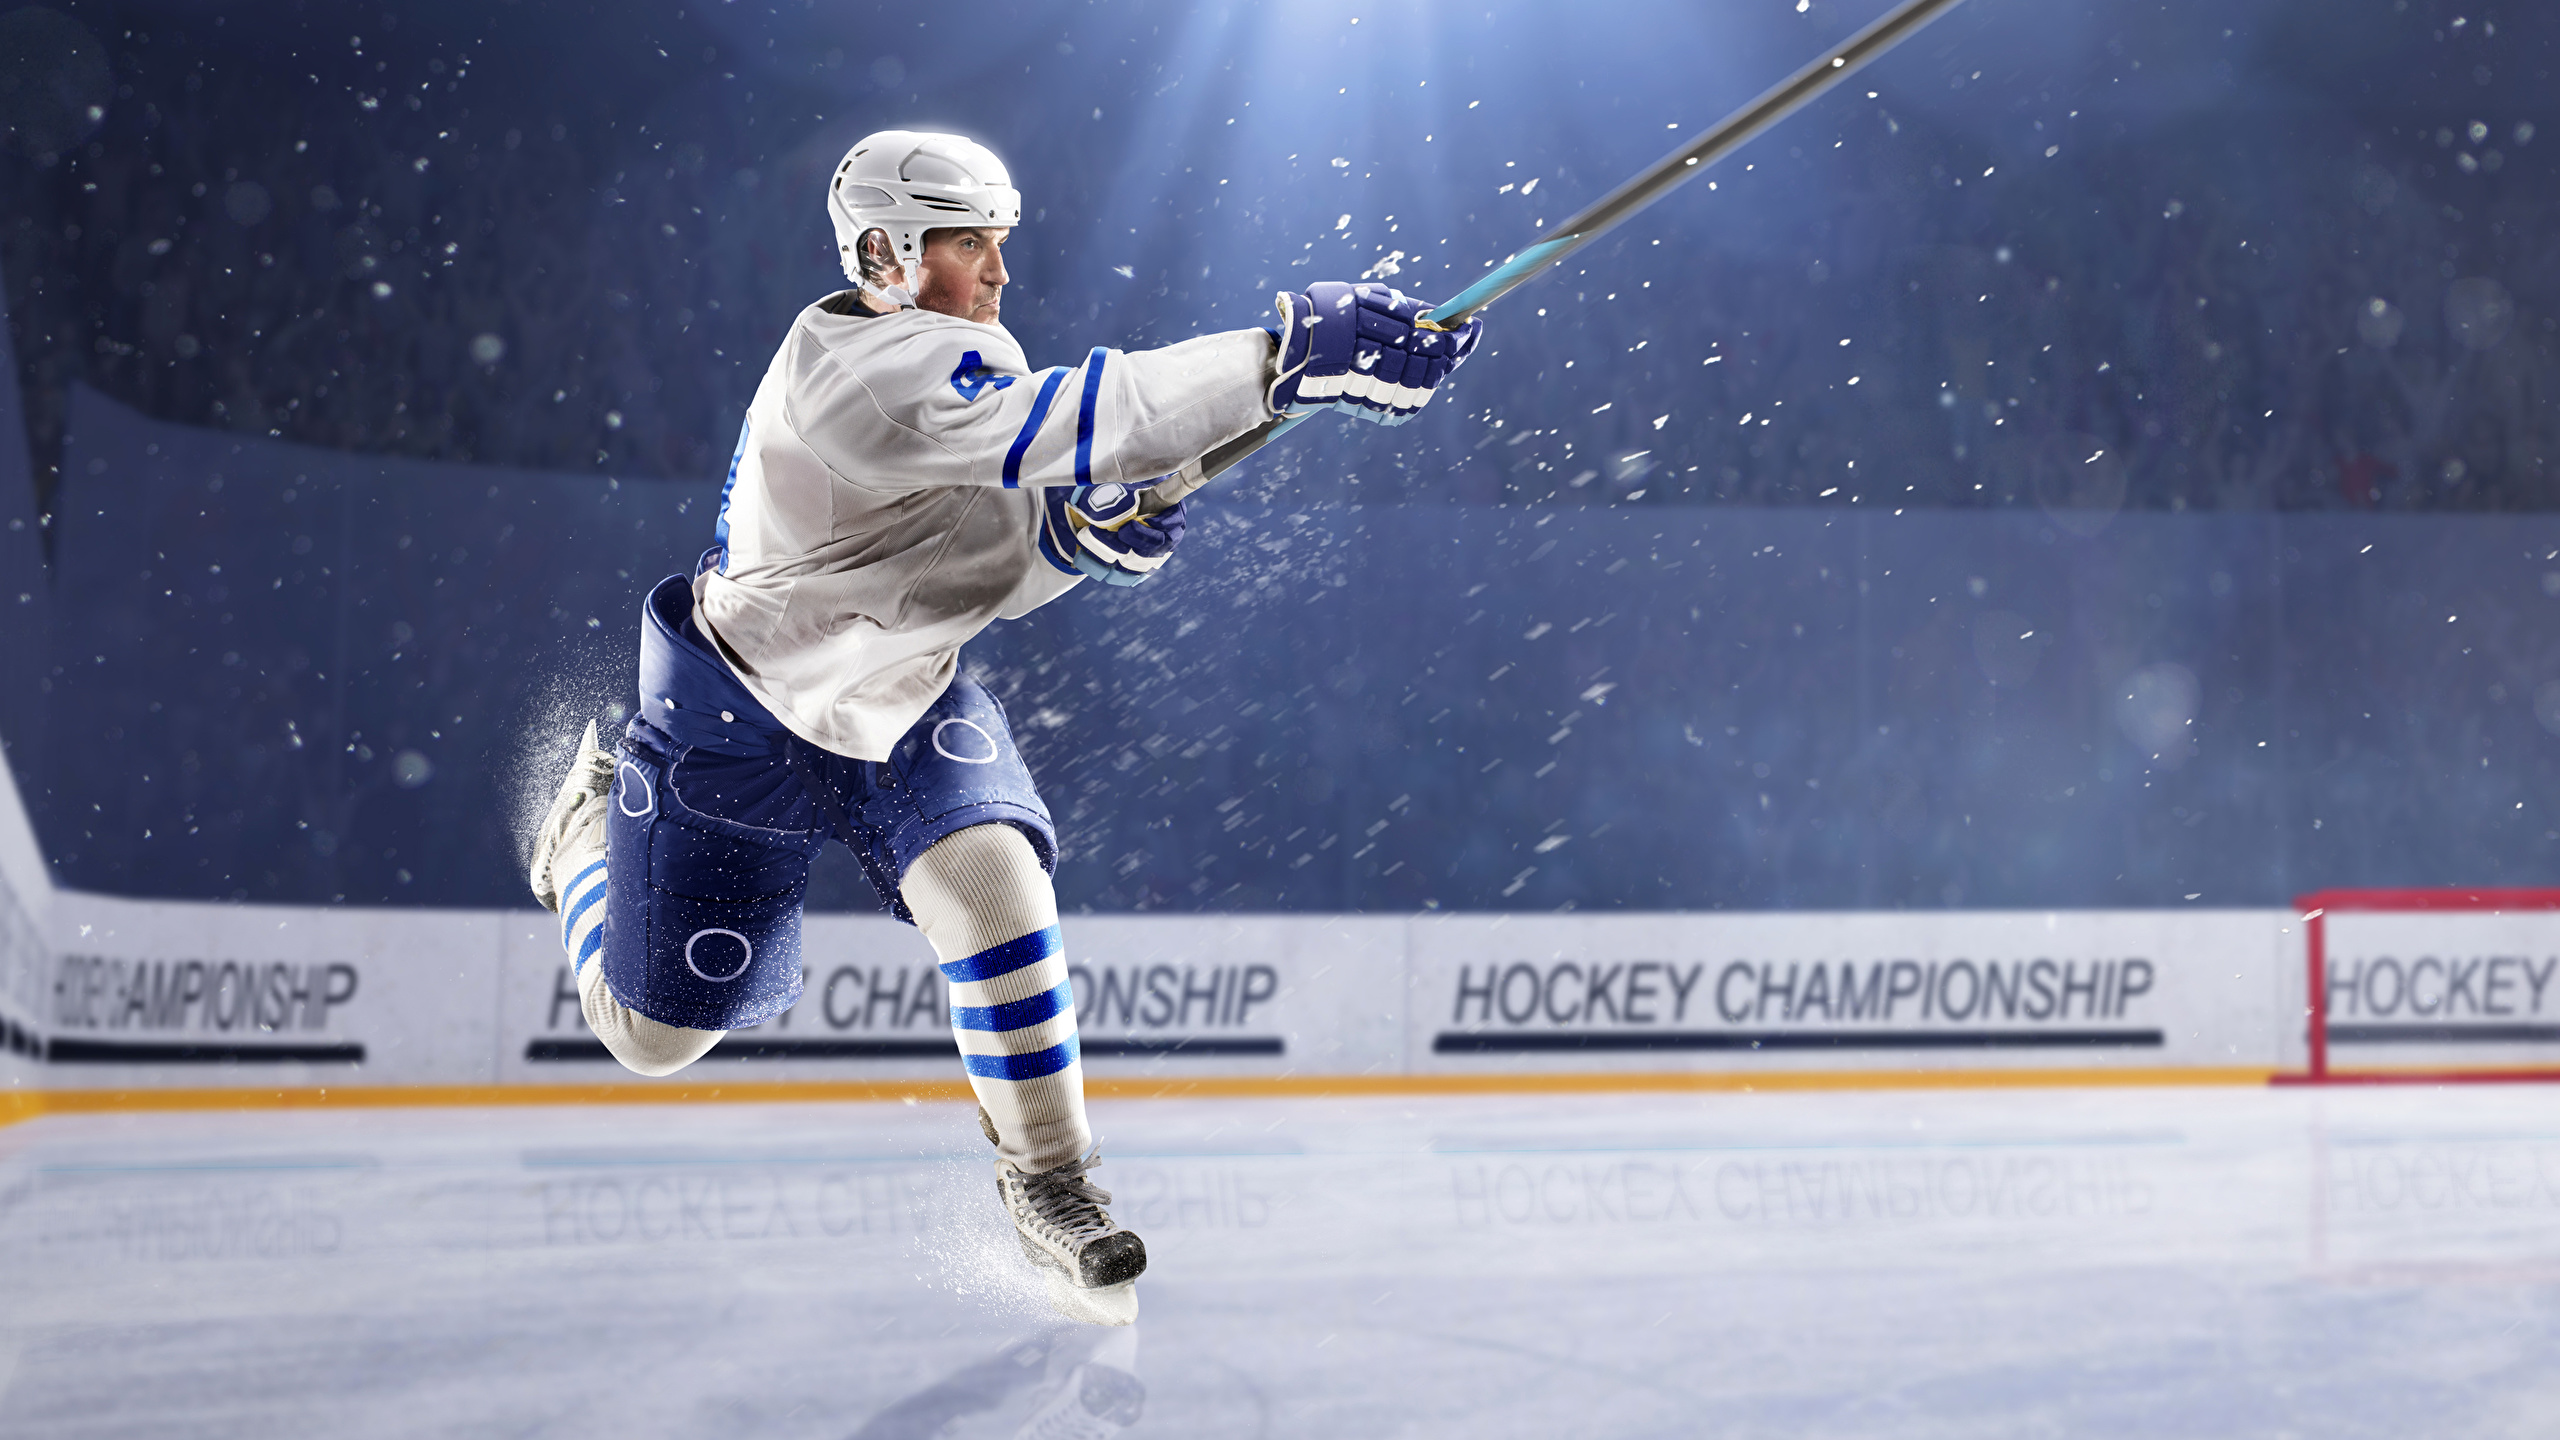 Wallpaper Rays Of Light Men Ice Rink Sport Hockey Uniform